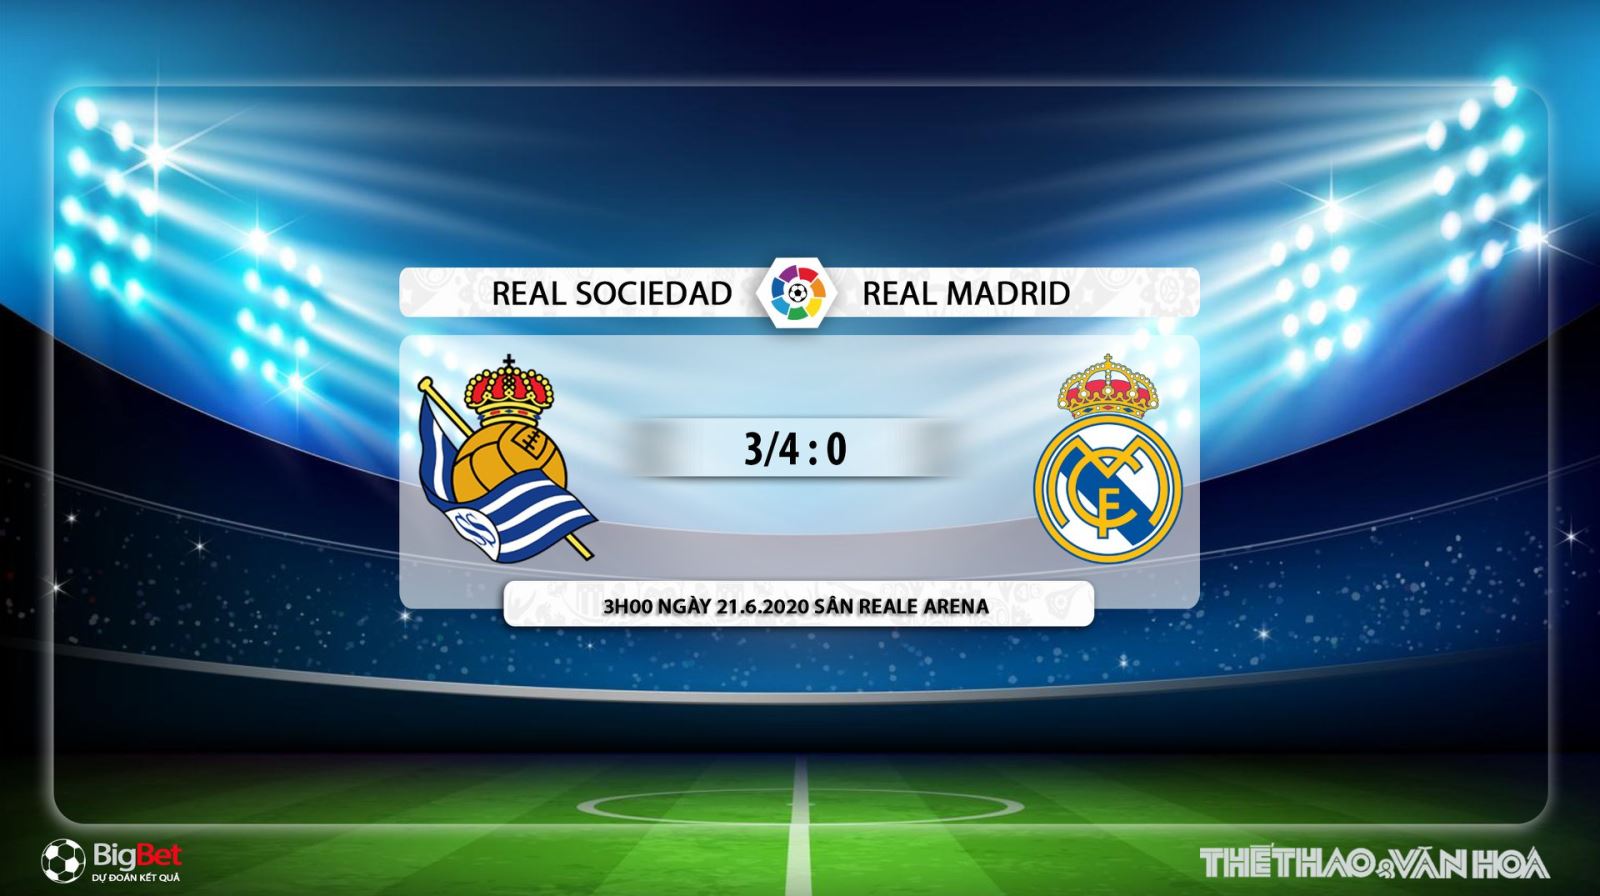 Real Sociedad vs Real Madrid, Real Madrid, Real Sociedad, trực tiếp bóng đá, nhận định bóng đá, kèo bóng đá, bóng đá hôm nay, lịch thi đấu